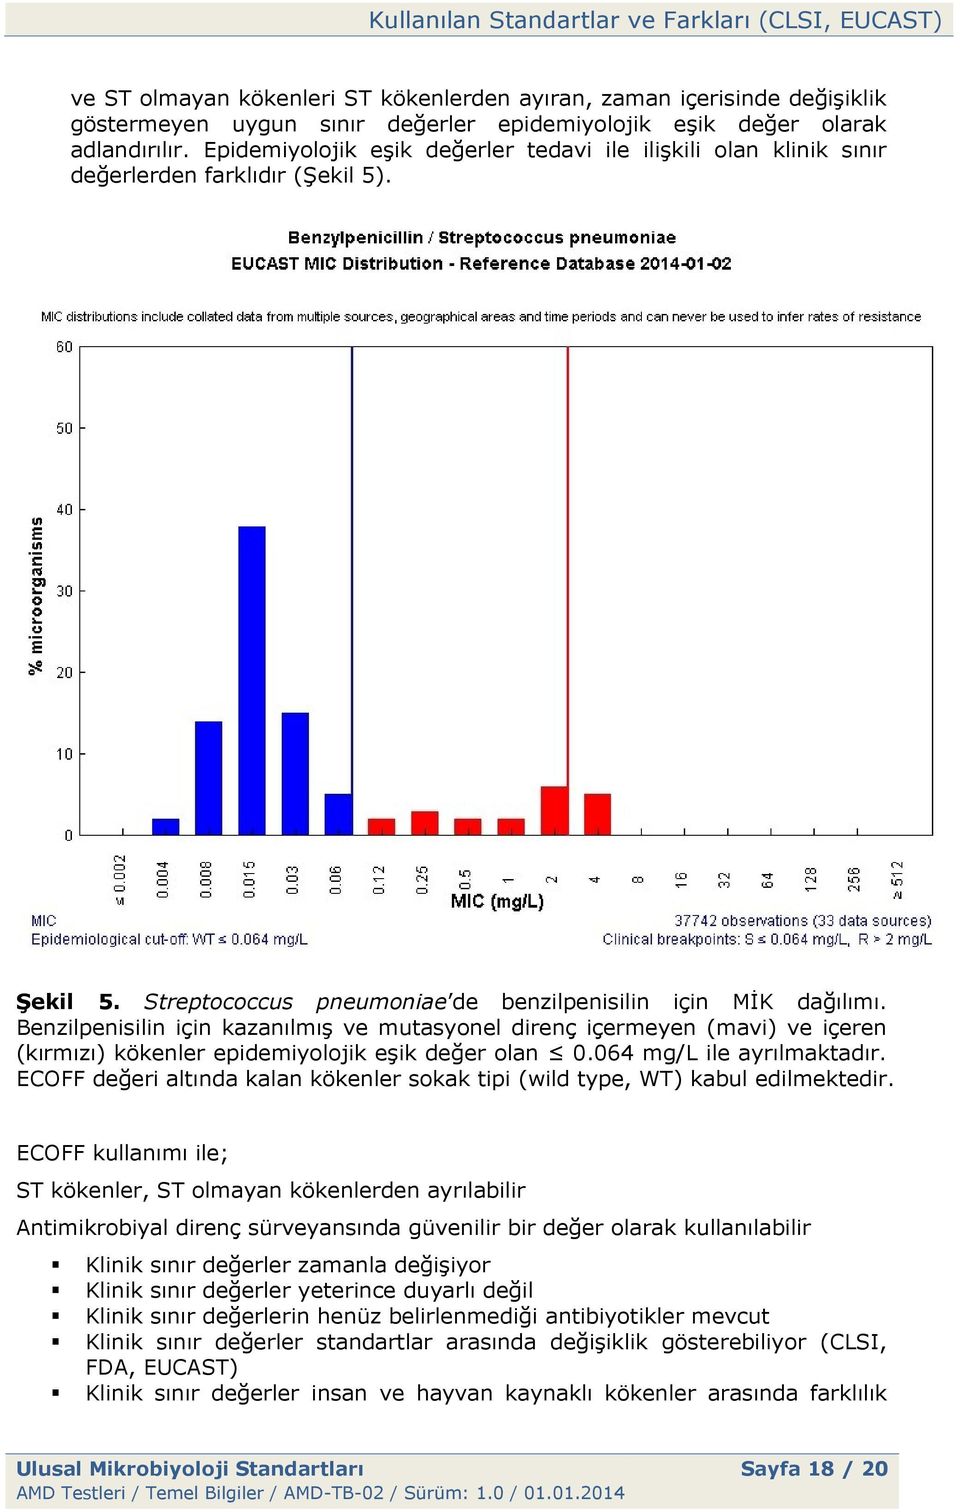 Benzilpenisilin için kazanılmış ve mutasyonel direnç içermeyen (mavi) ve içeren (kırmızı) kökenler epidemiyolojik eşik değer olan 0.064 mg/l ile ayrılmaktadır.